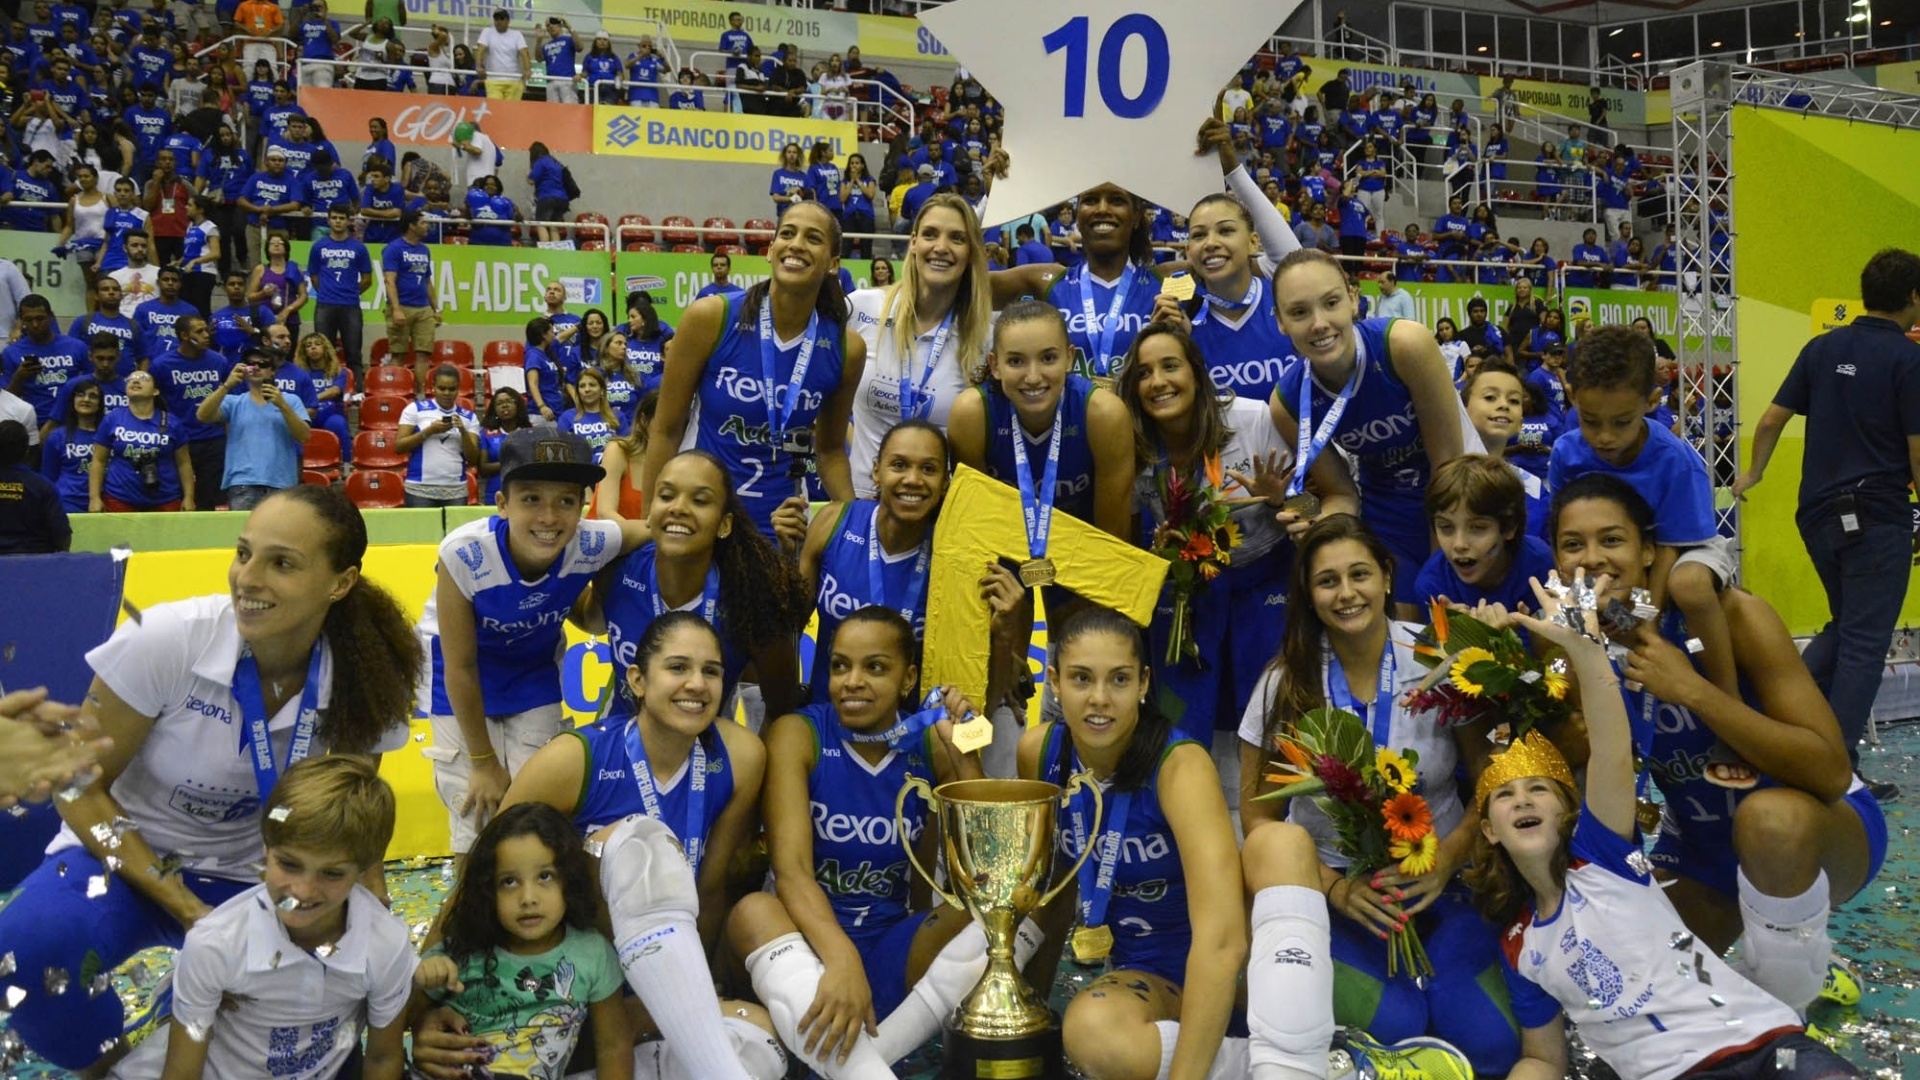 Rexona/Ades venceu o Molico/Nestlé por 3 sets a 0 e conquistou a Superliga